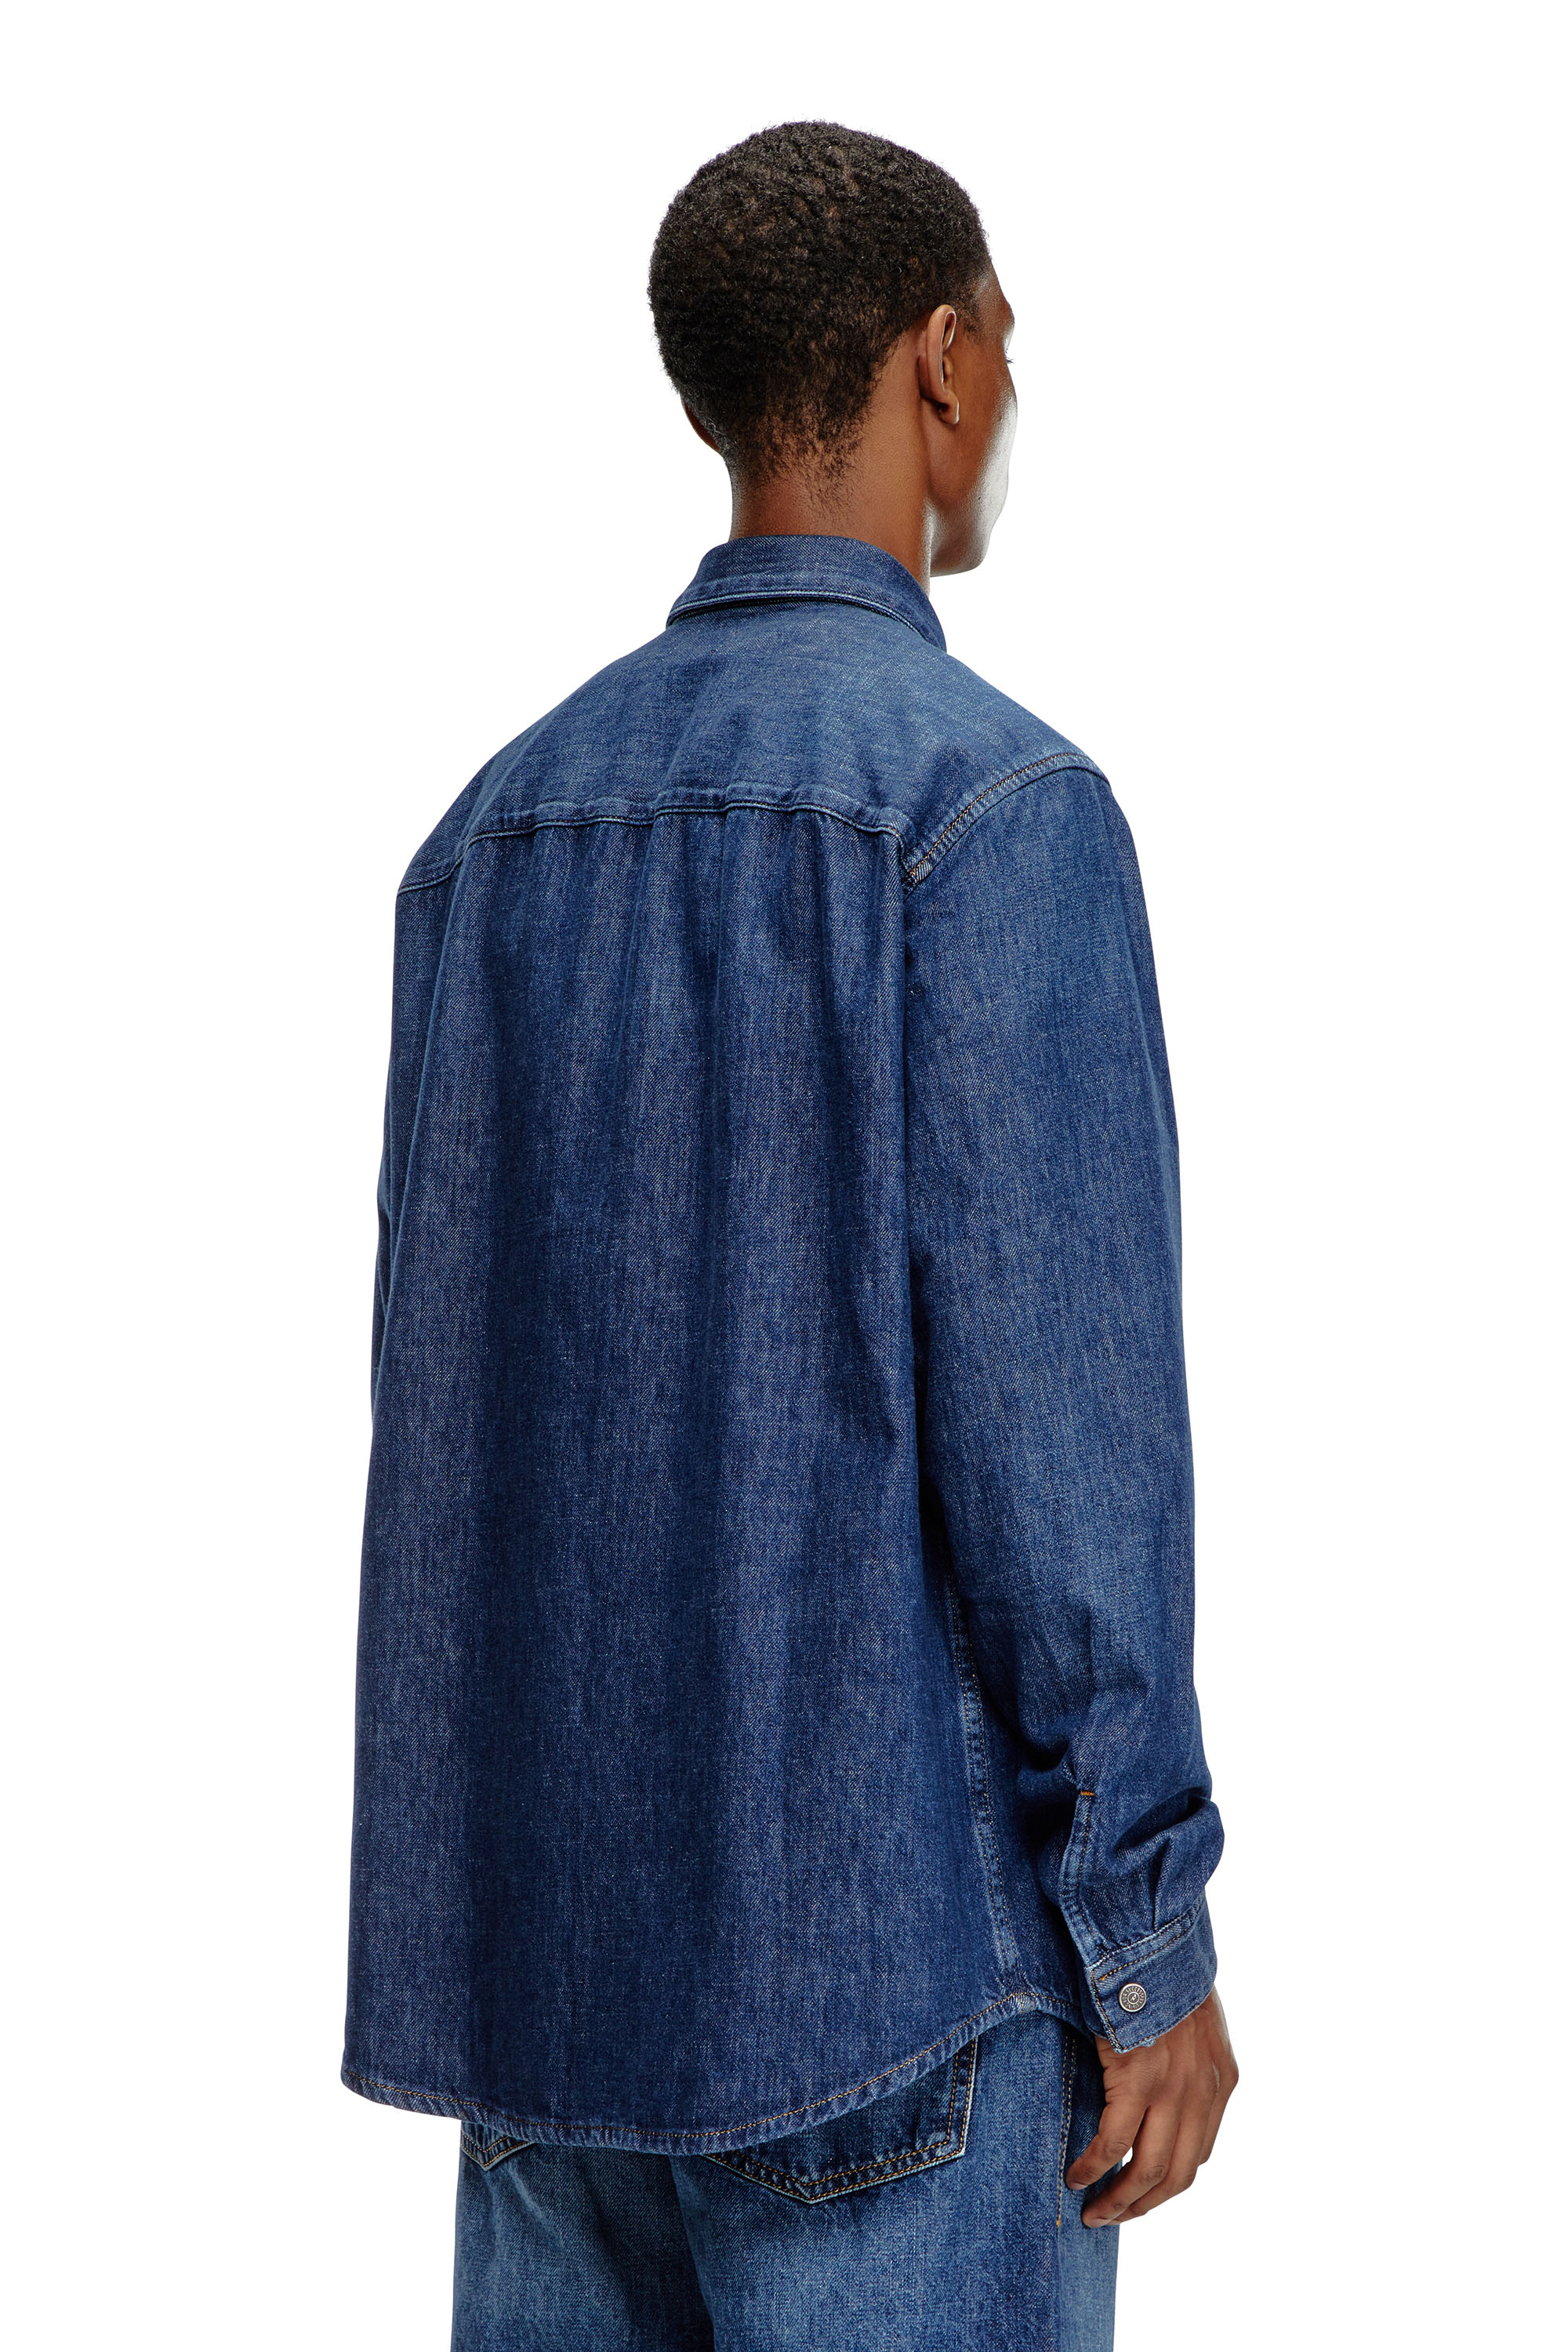 Diesel - D-SIMPLY, Man Shirt in denim in Blue - Image 2